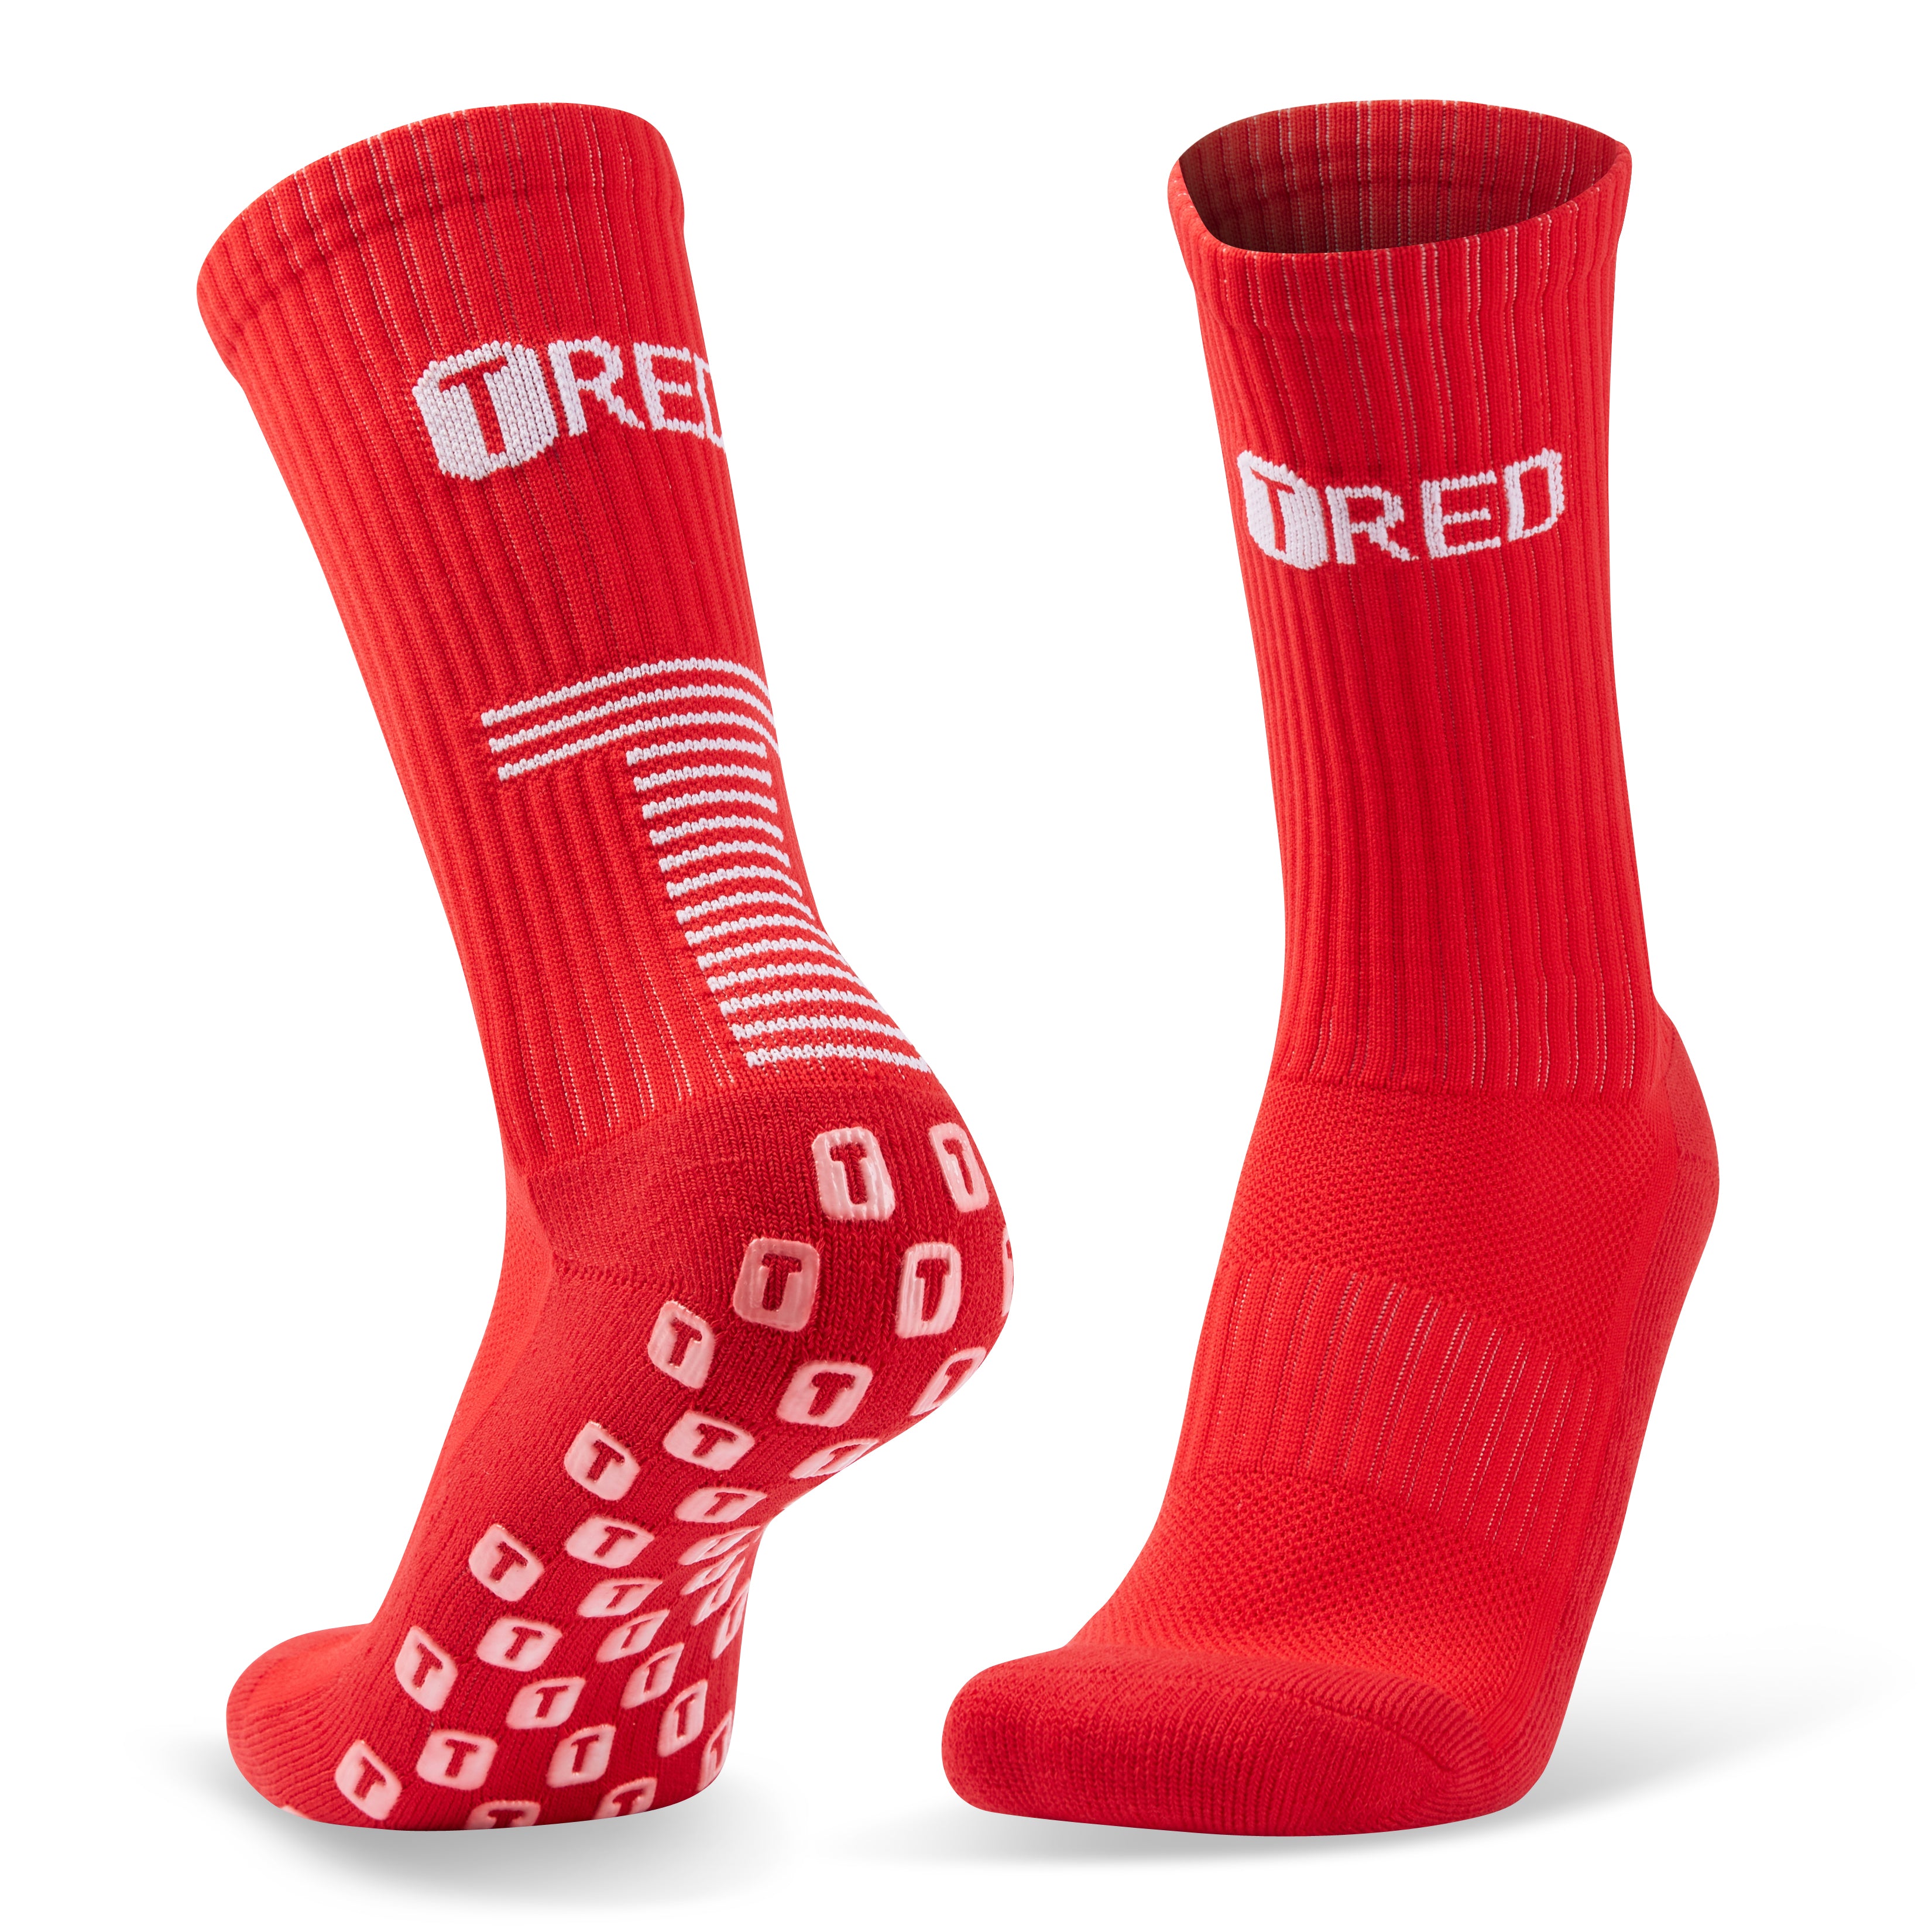 RED FOOTBALL SOCKS - GRIP STAR - Sportsclique Shop, football socks